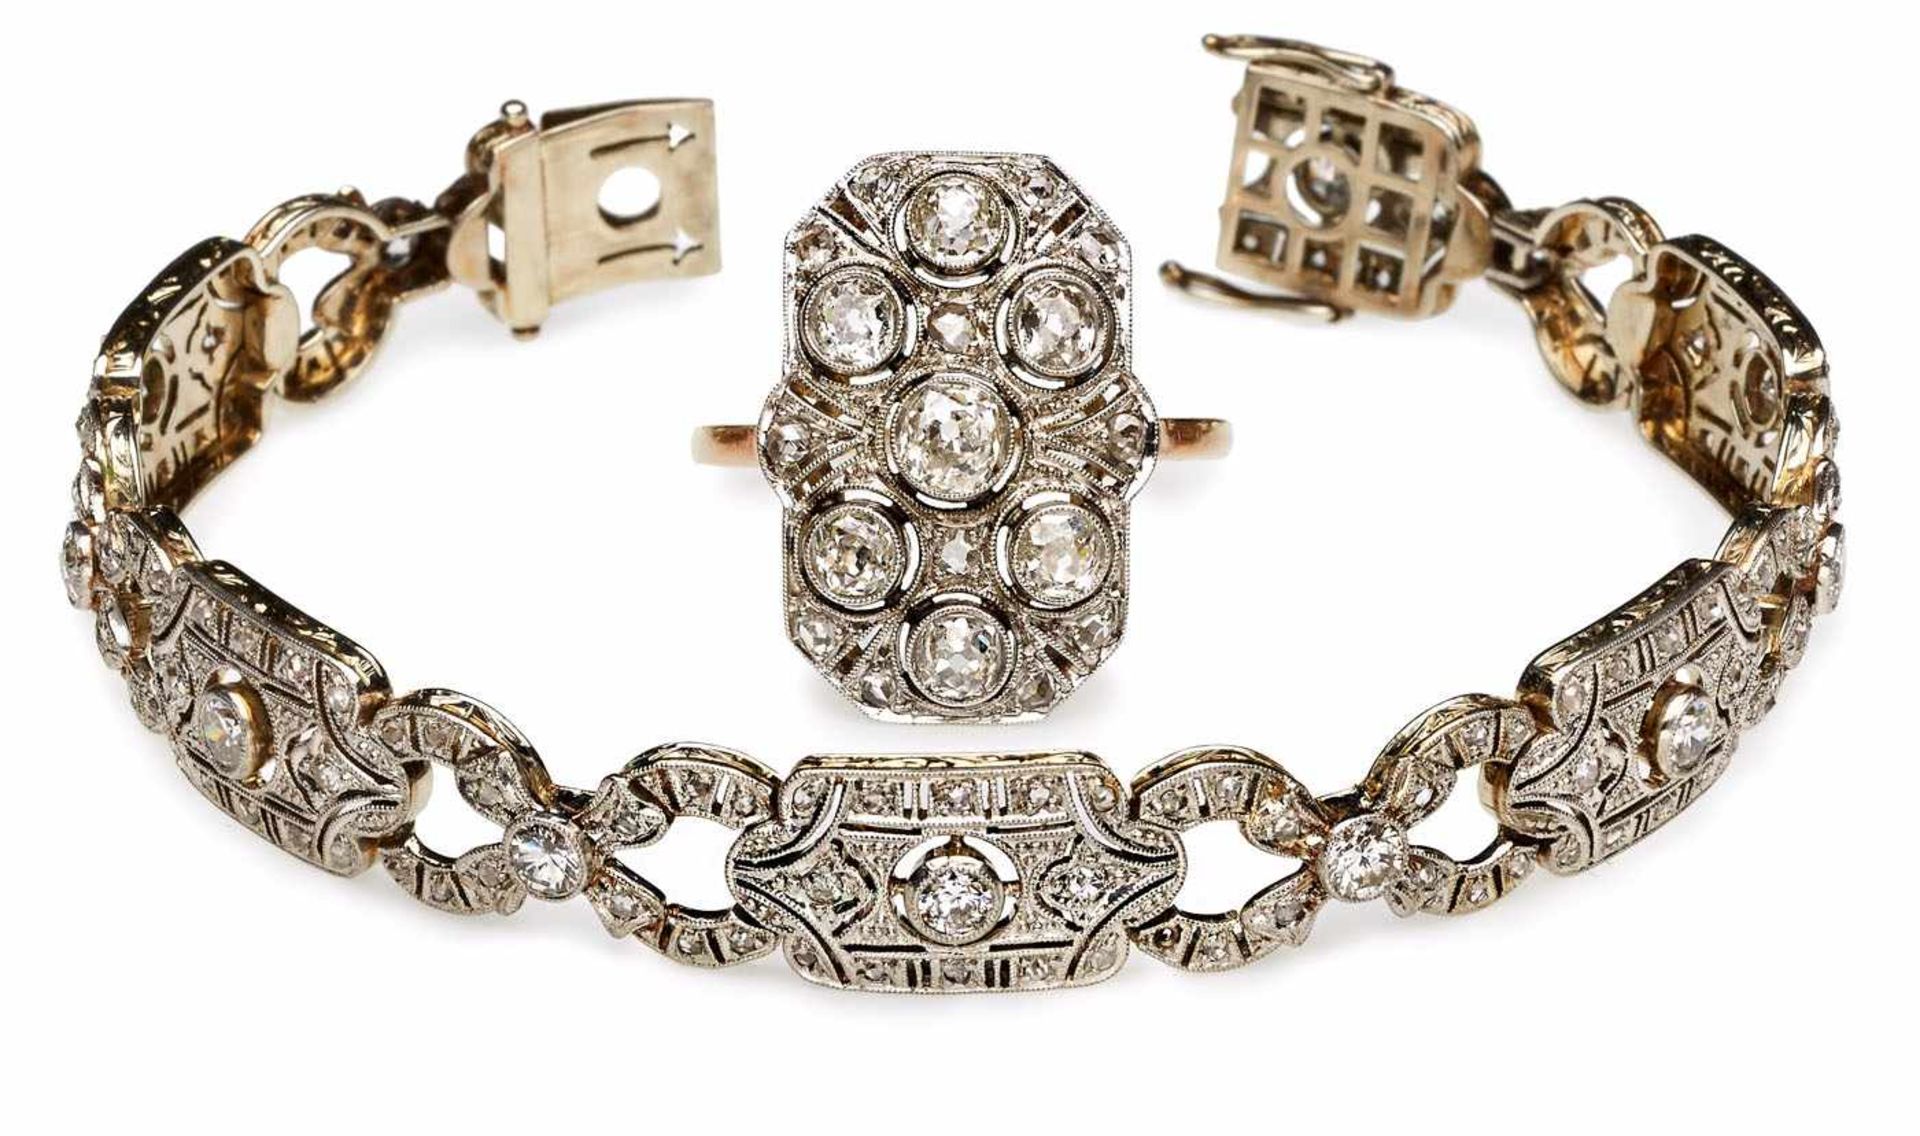 Armband und Ring, Art Déco, um 1920. GG m. Silberauflage. Je durchbrochen gearbeitete, rechteckige